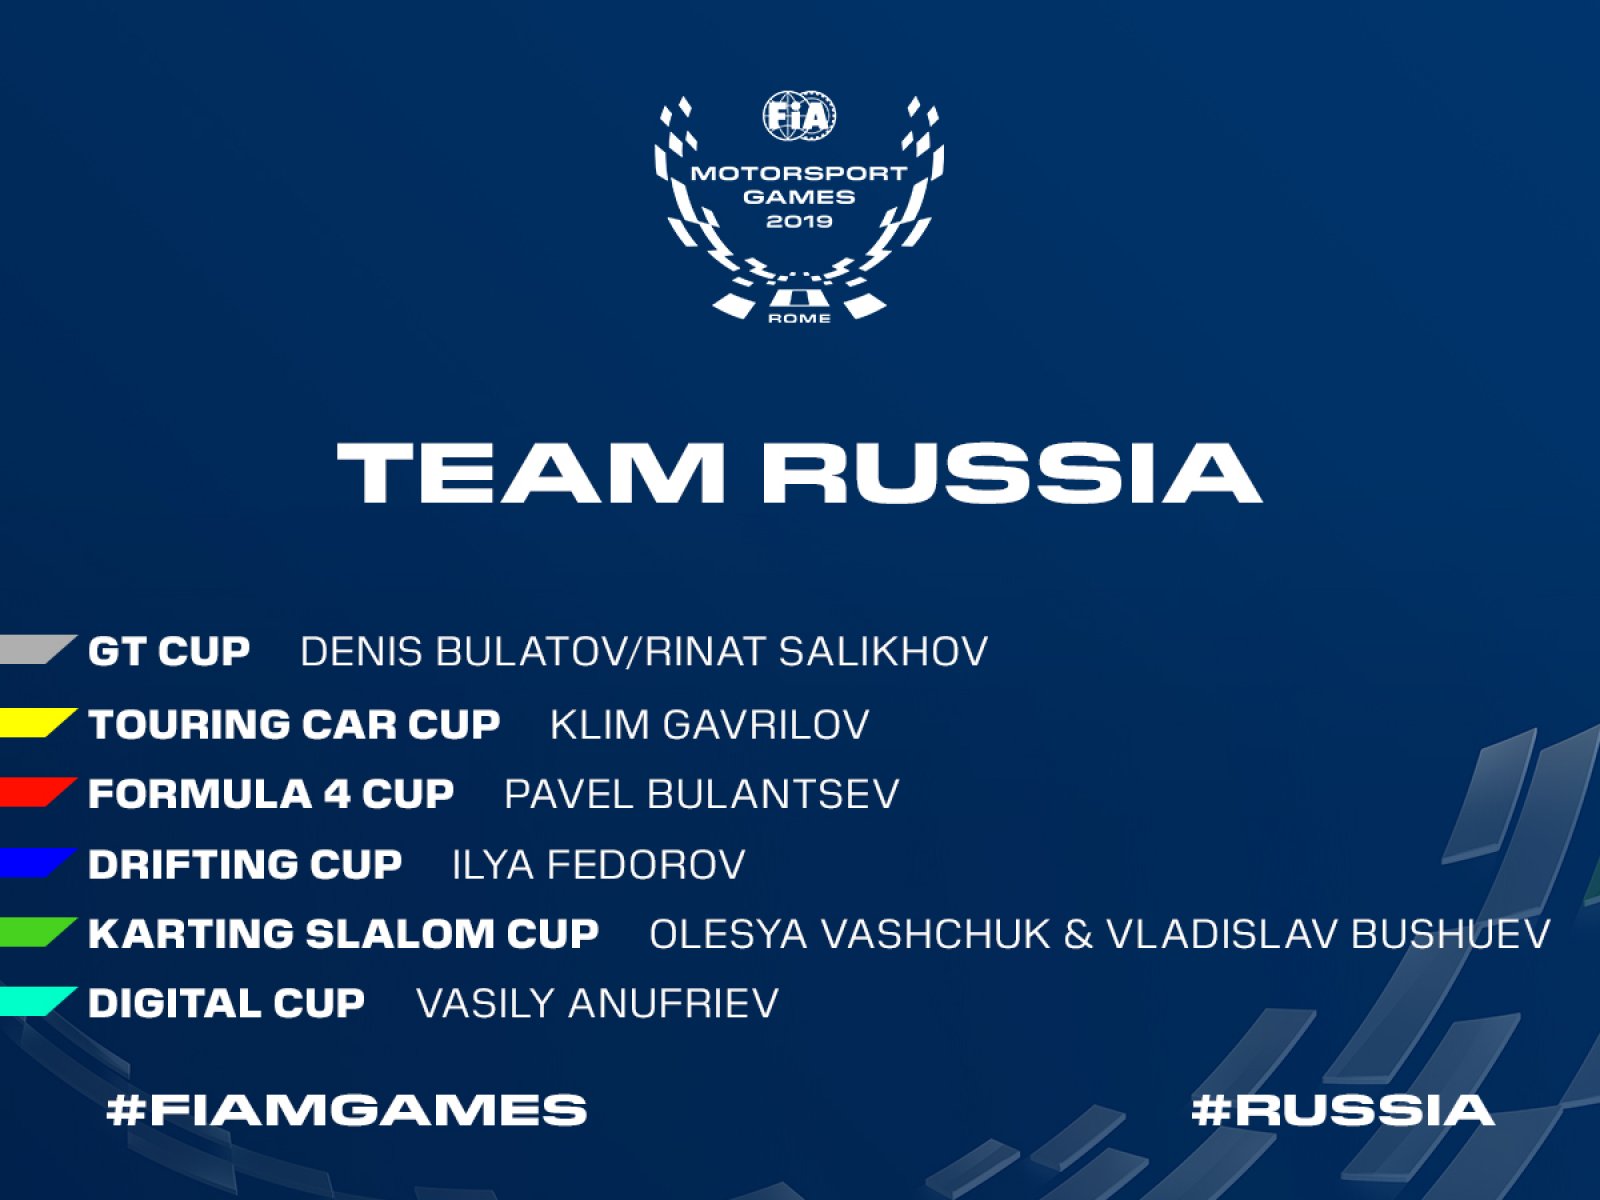 La Russia ha confermato la sua intera formazione per la prima edizione dei FIA Motorsport Games a Roma.